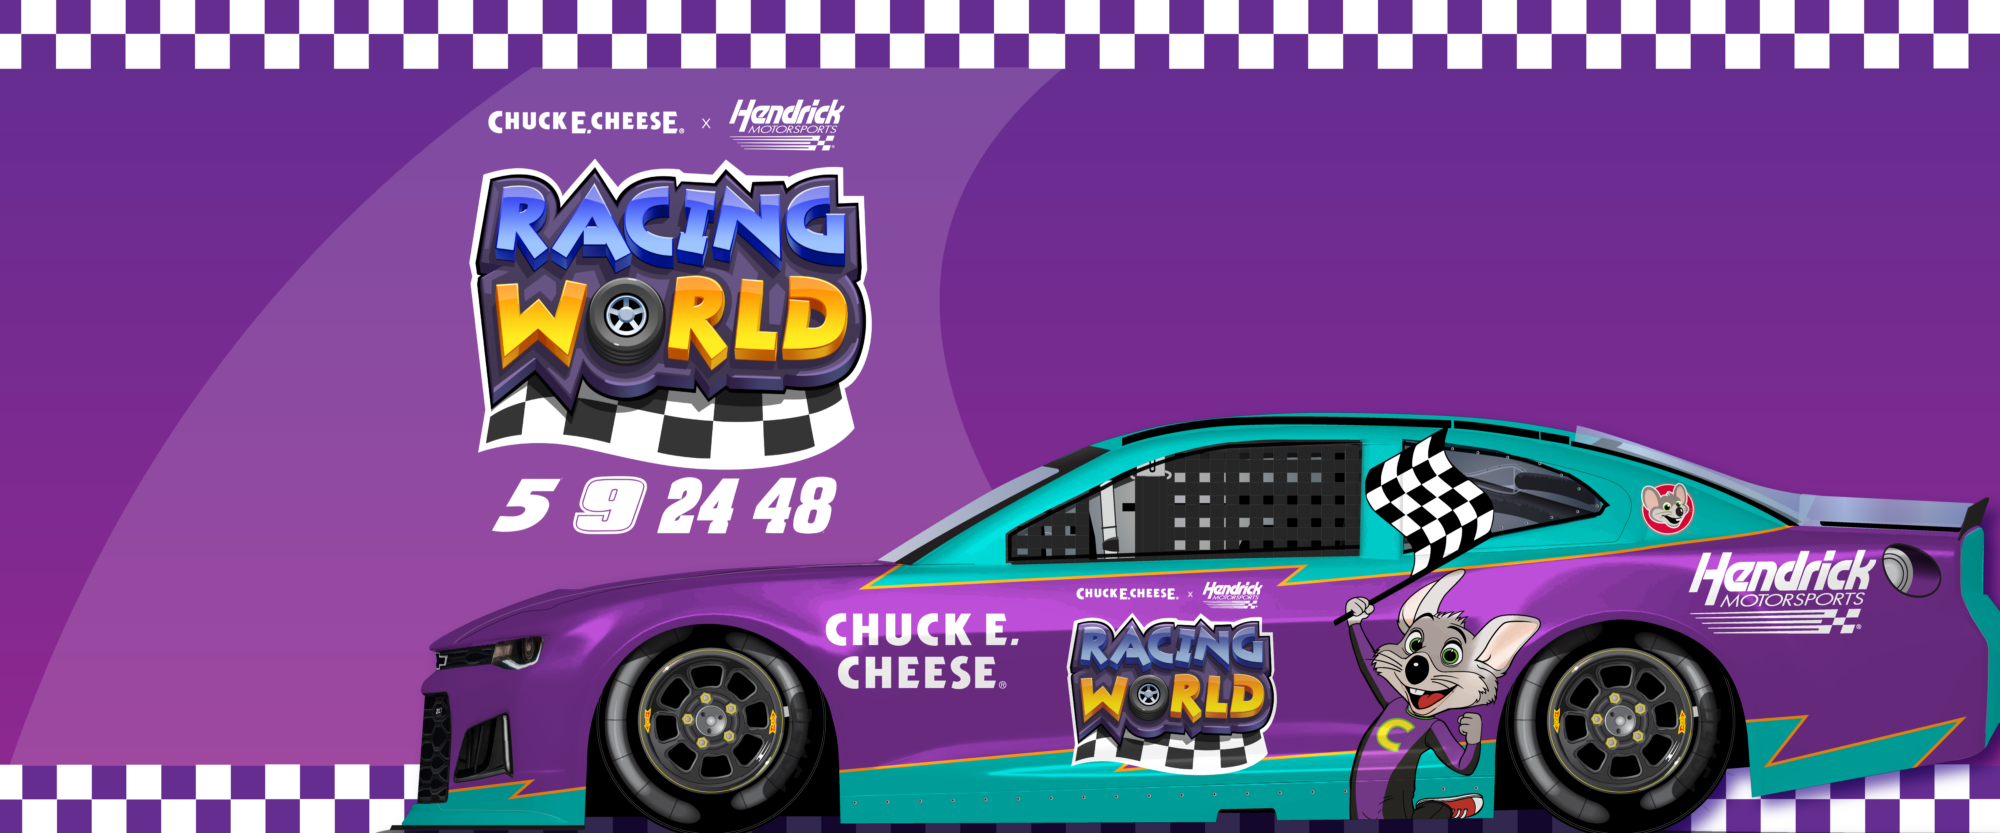 Racing World con auto de carreras violeta y azul con Chuck E. Cheese